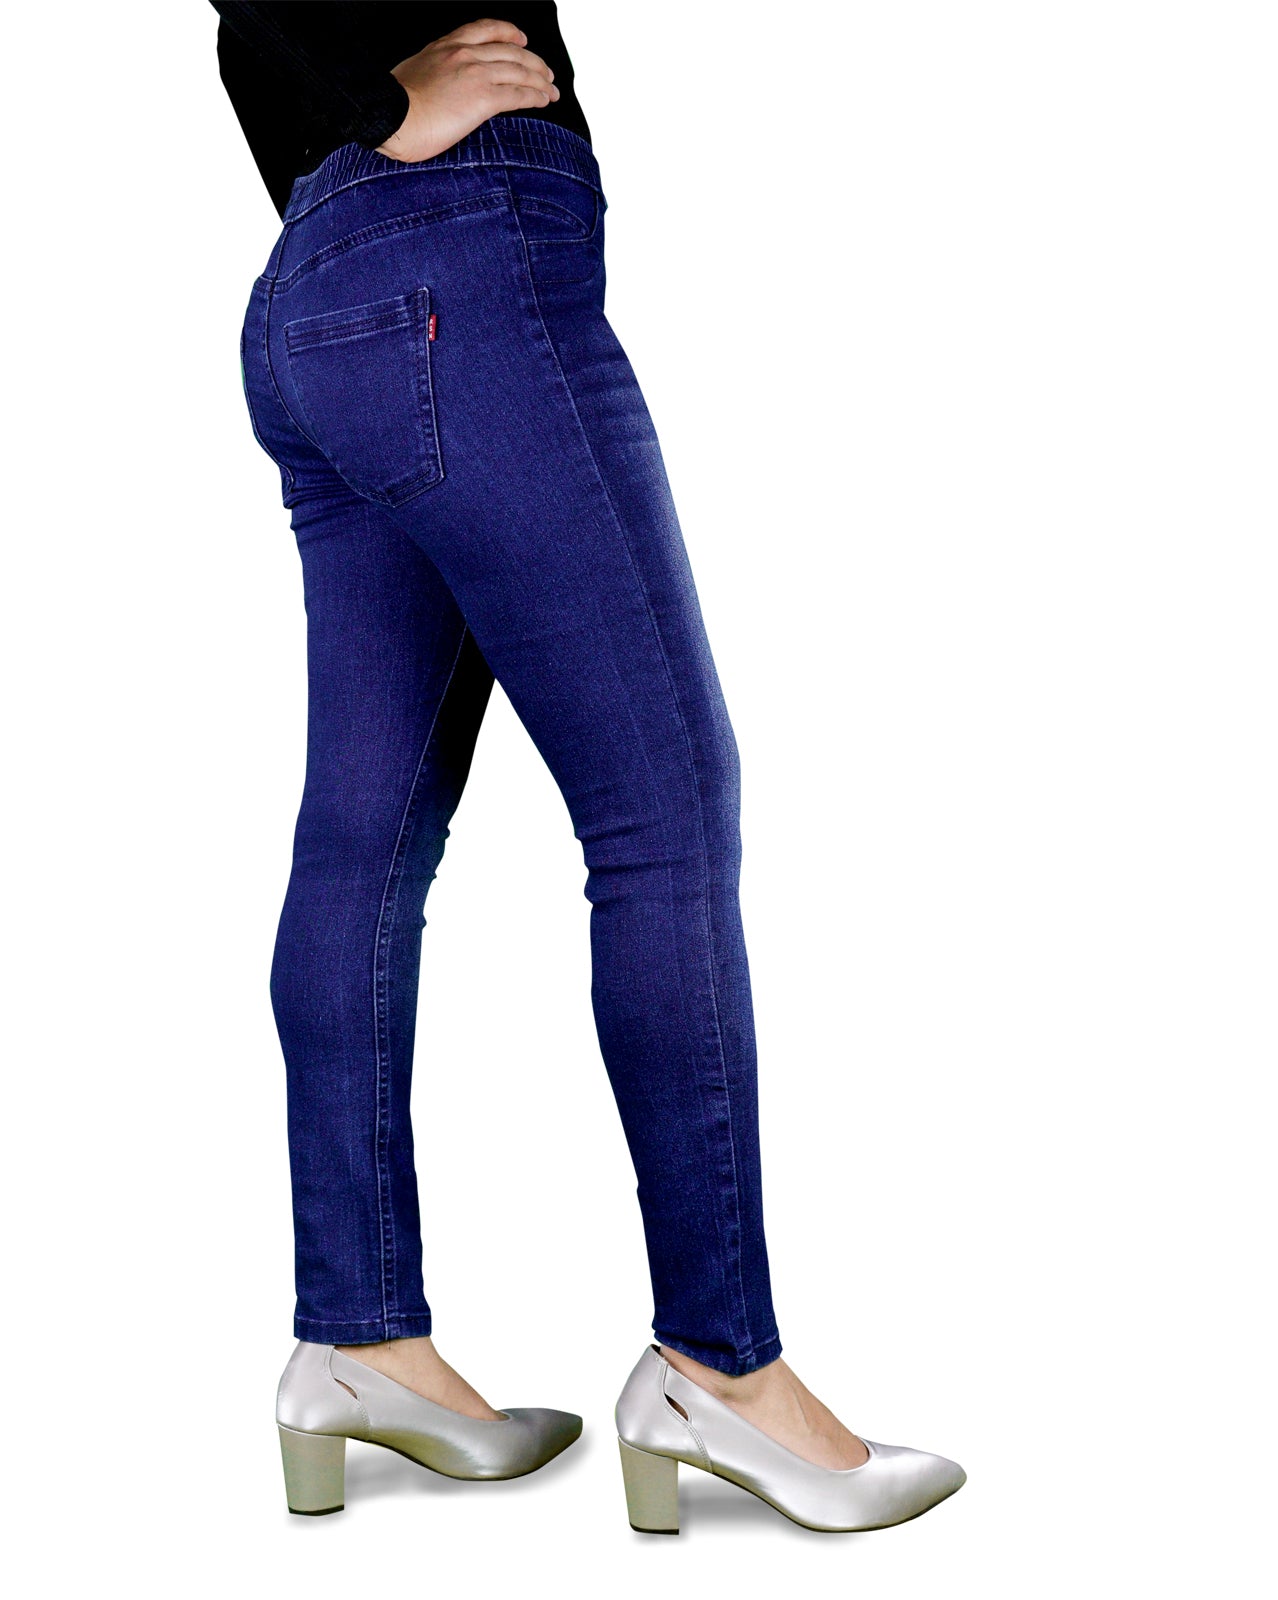 Girls' Jeans Blue Jeggings Skinny